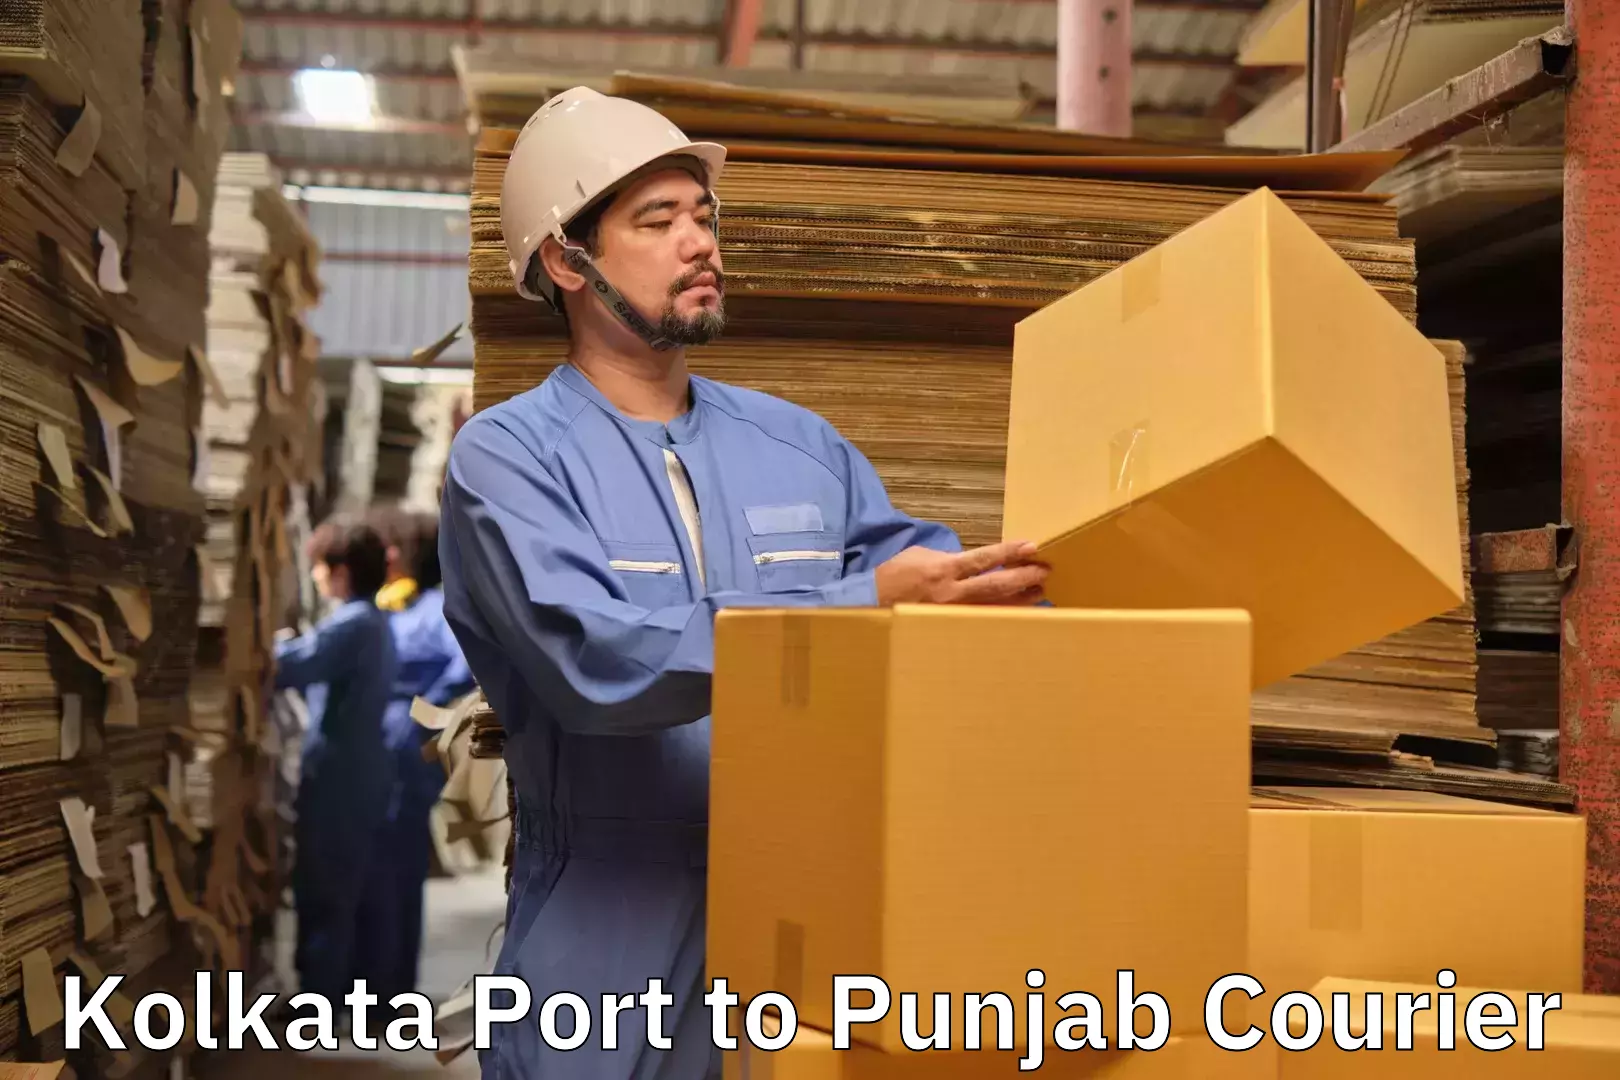 Luggage delivery rates Kolkata Port to Central University of Punjab Bathinda